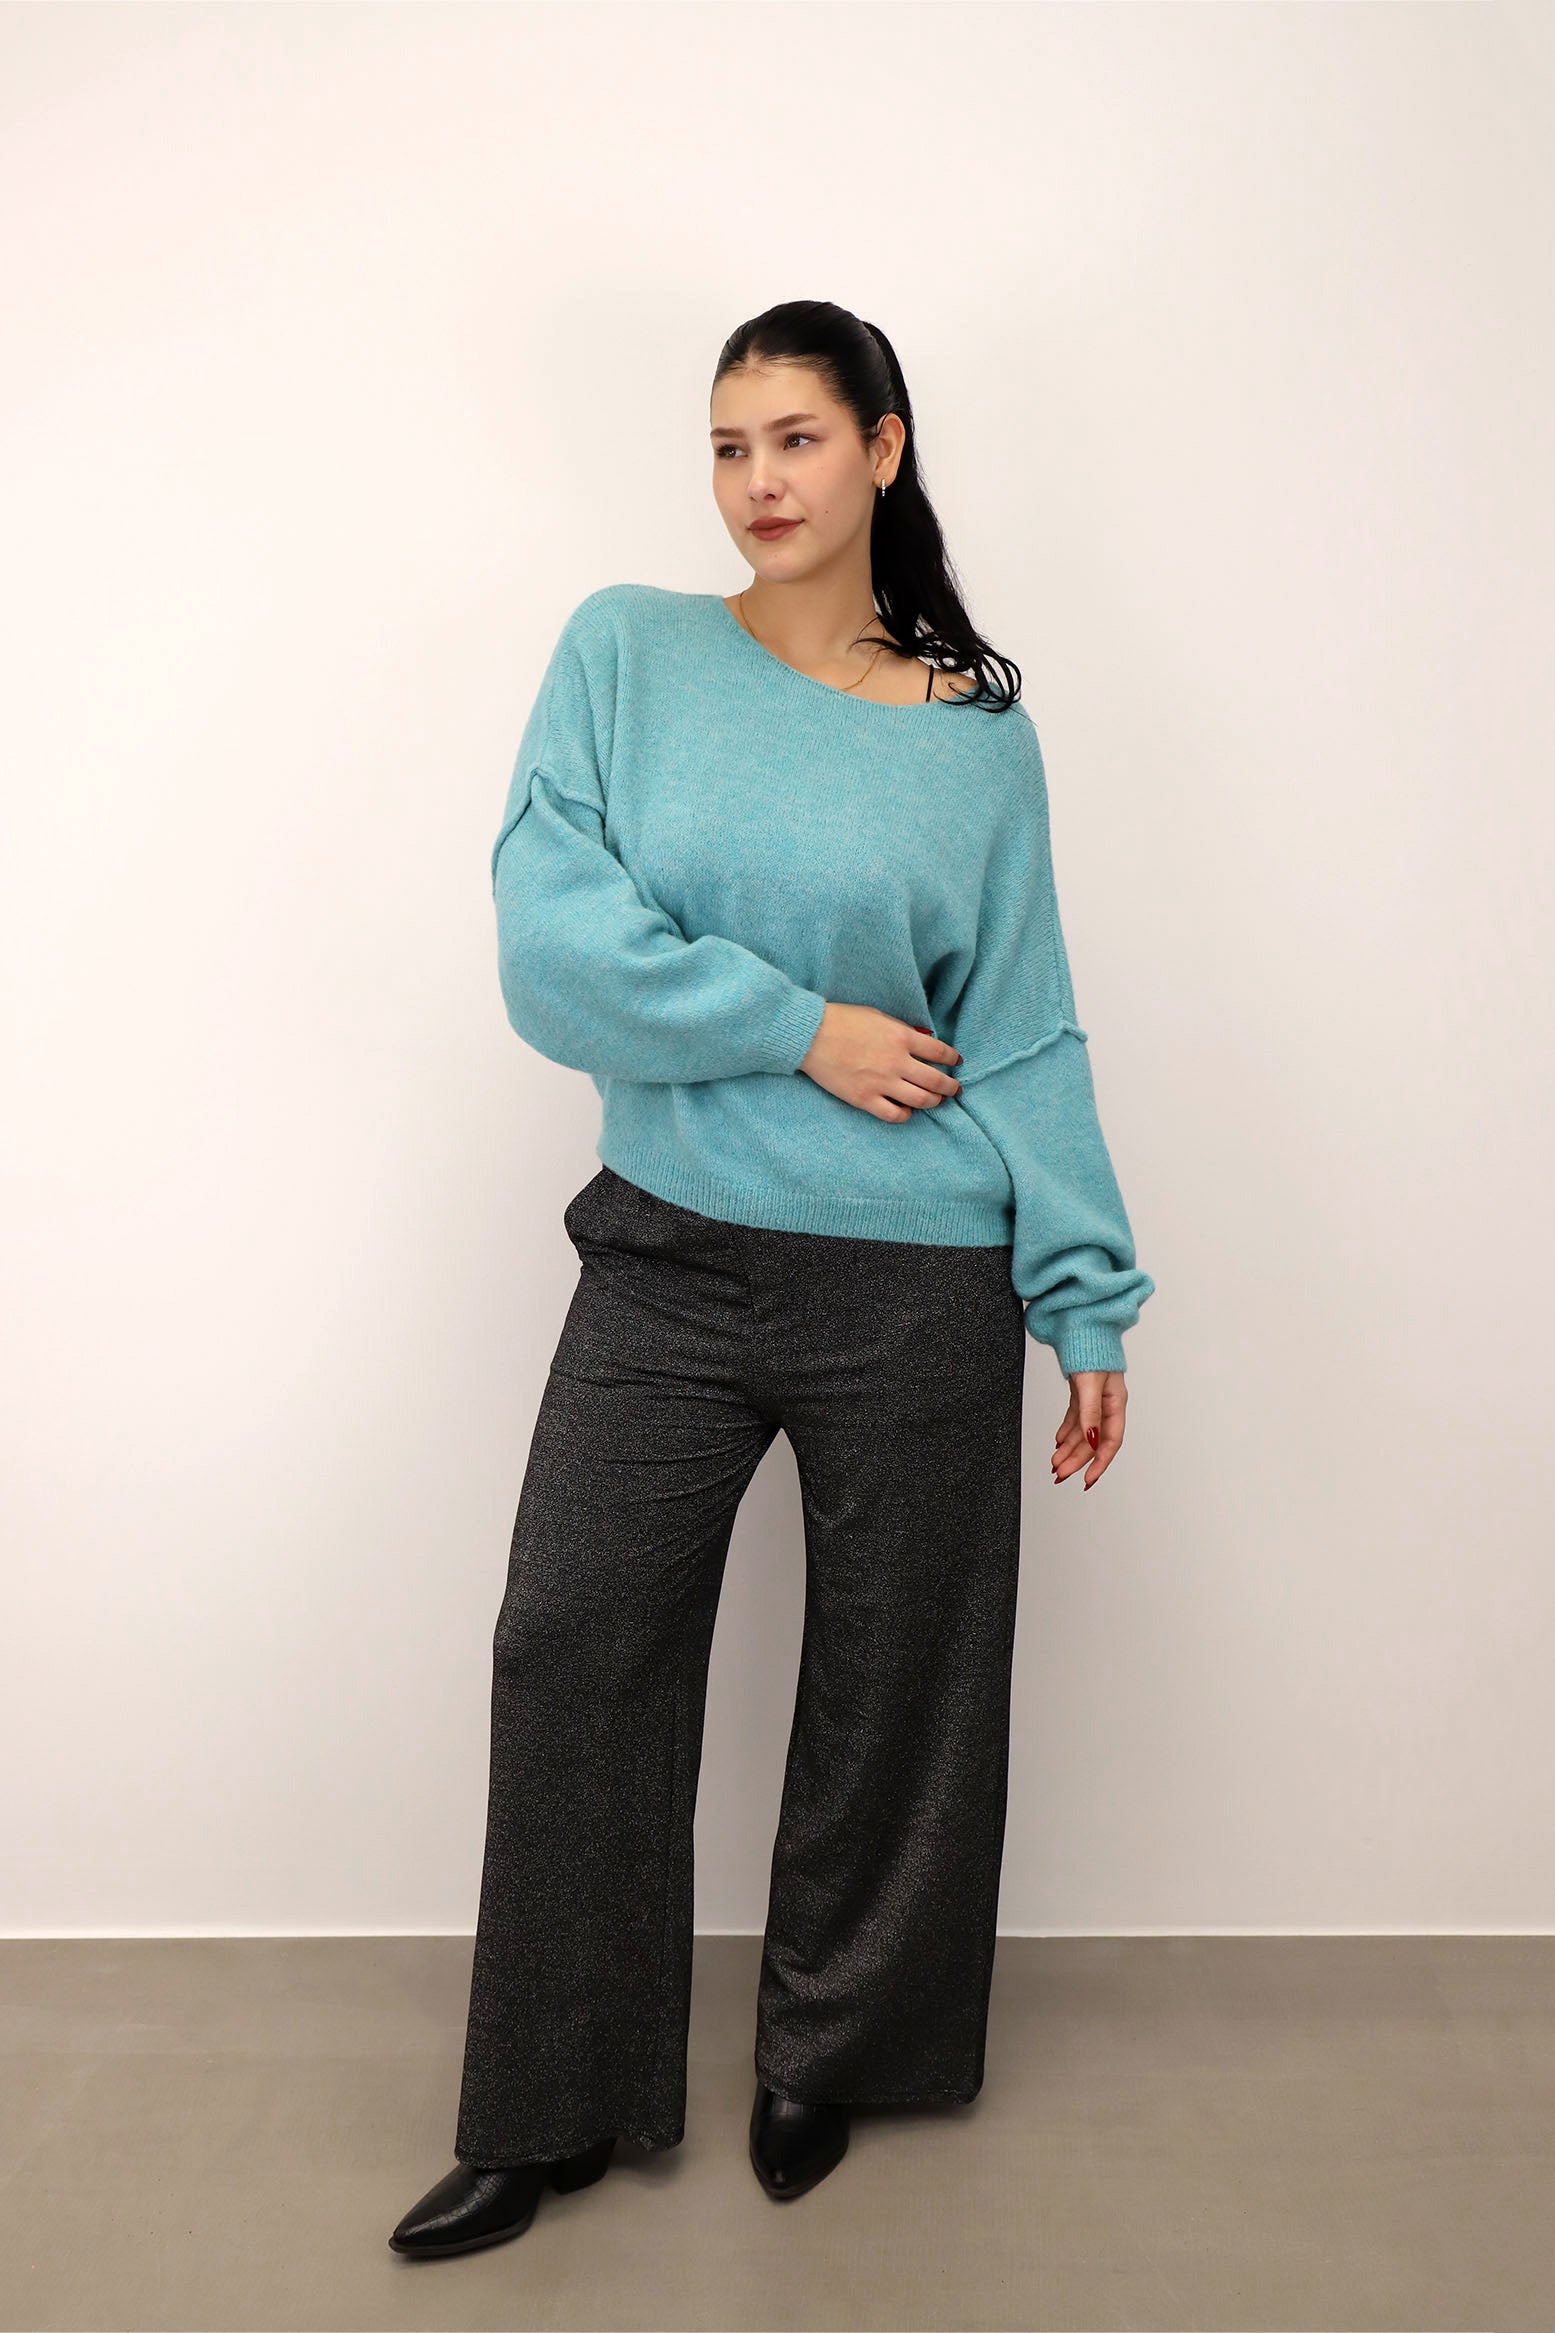 Pullover mit aufgesetzter Naht - Hellblau